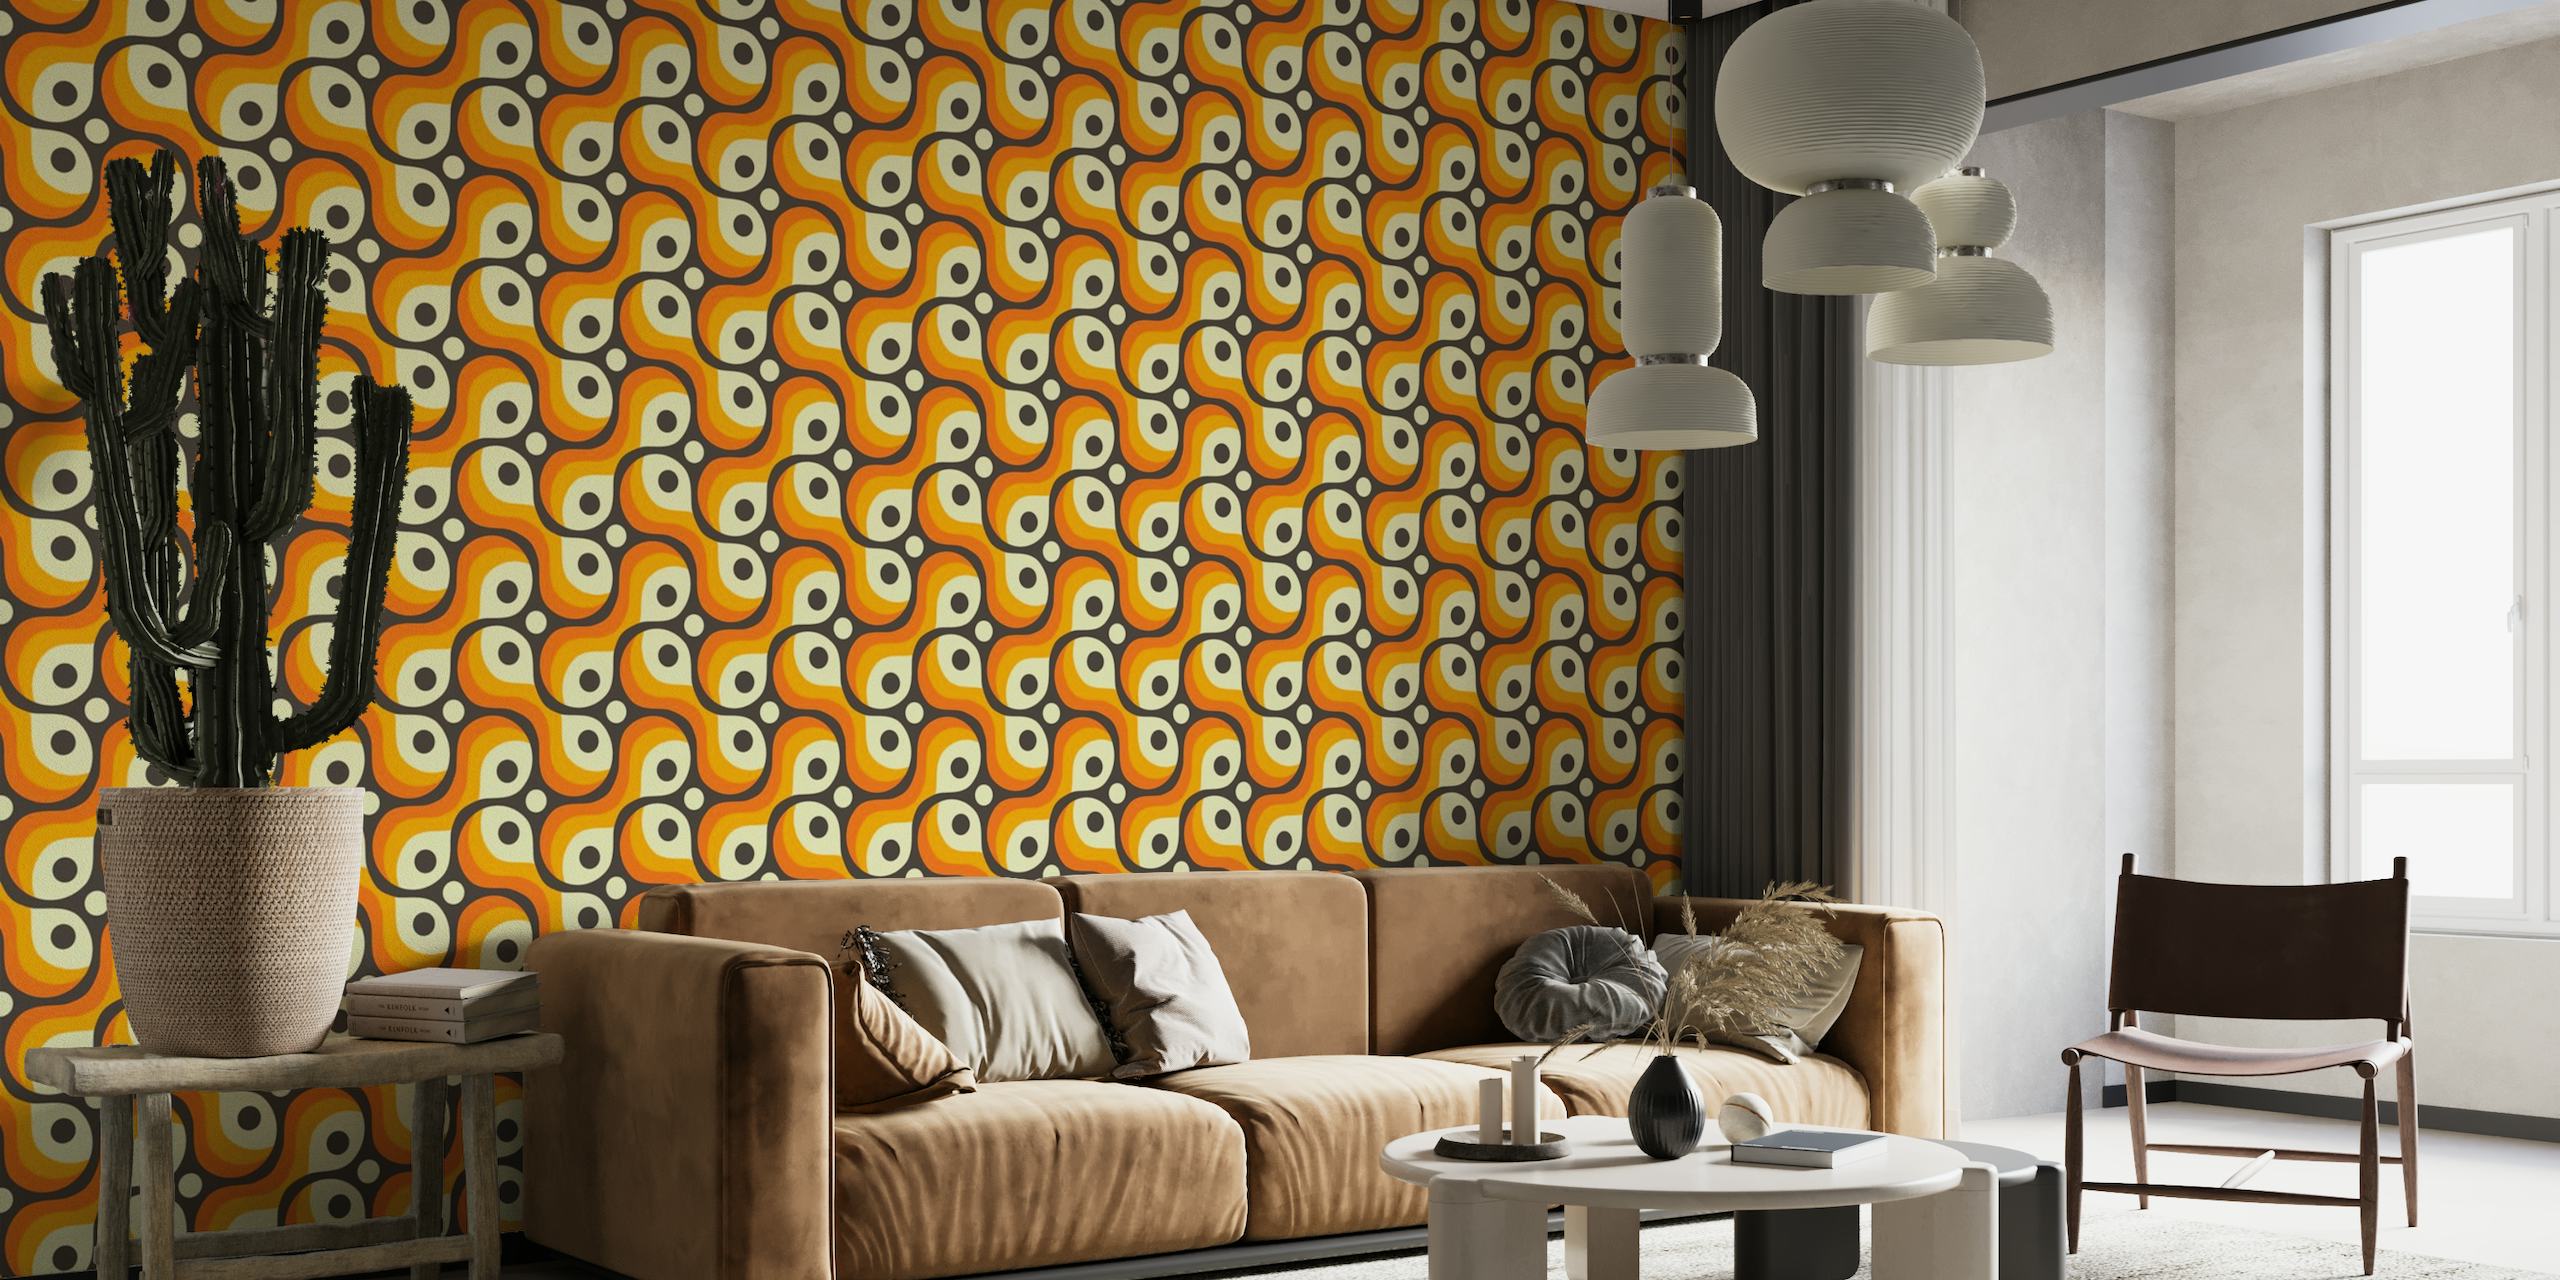 Zidna slika inspirirana vintage apstraktnim retro oblicima u narančastoj, krem i crnoj boji